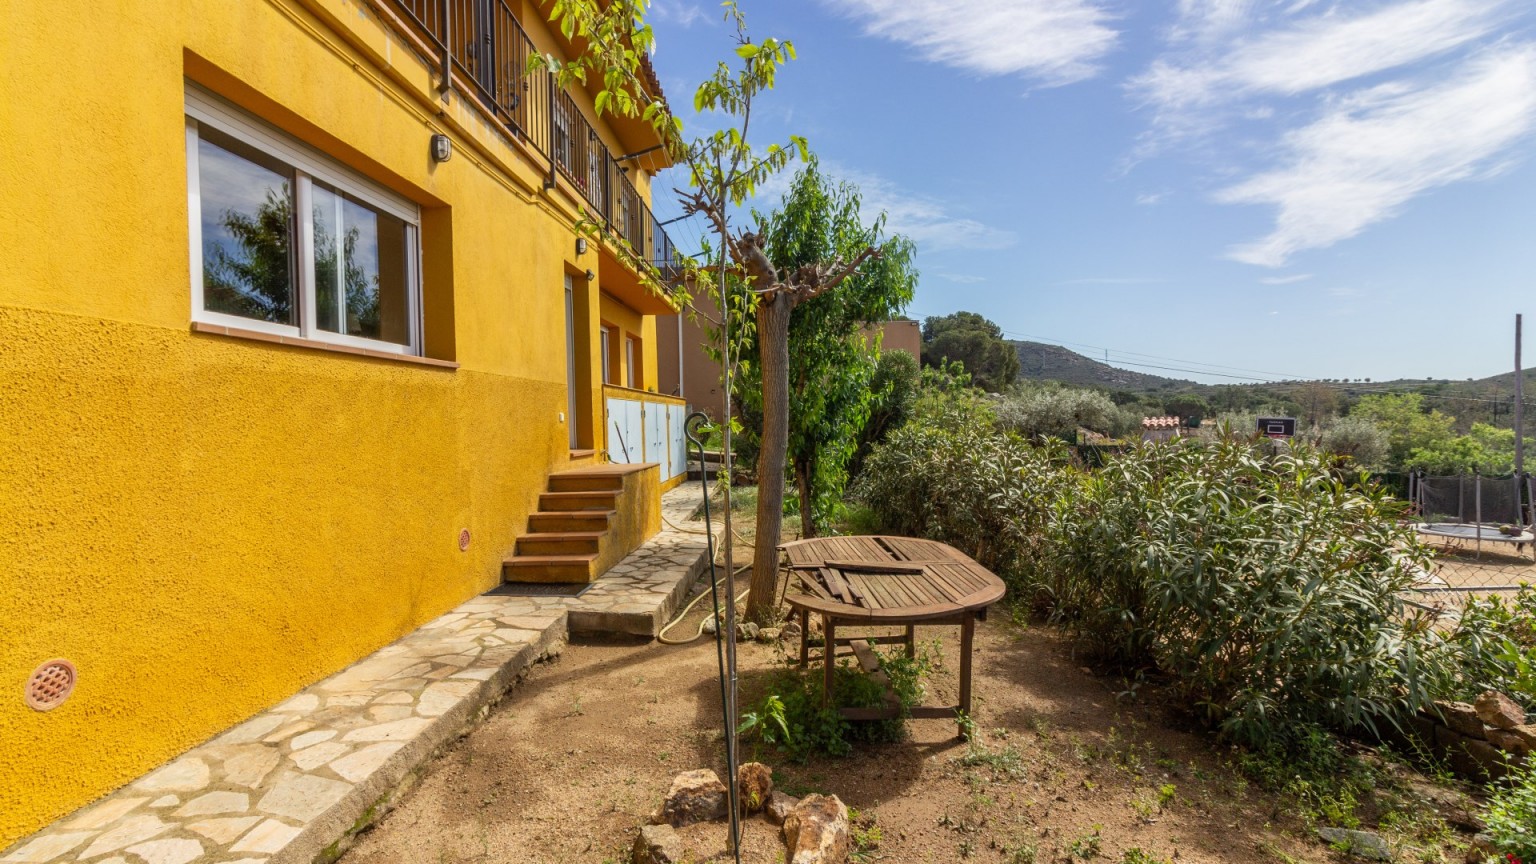 Encantadora casa unifamiliar aïllada en venda, amb jardí, a Vilajuïga.